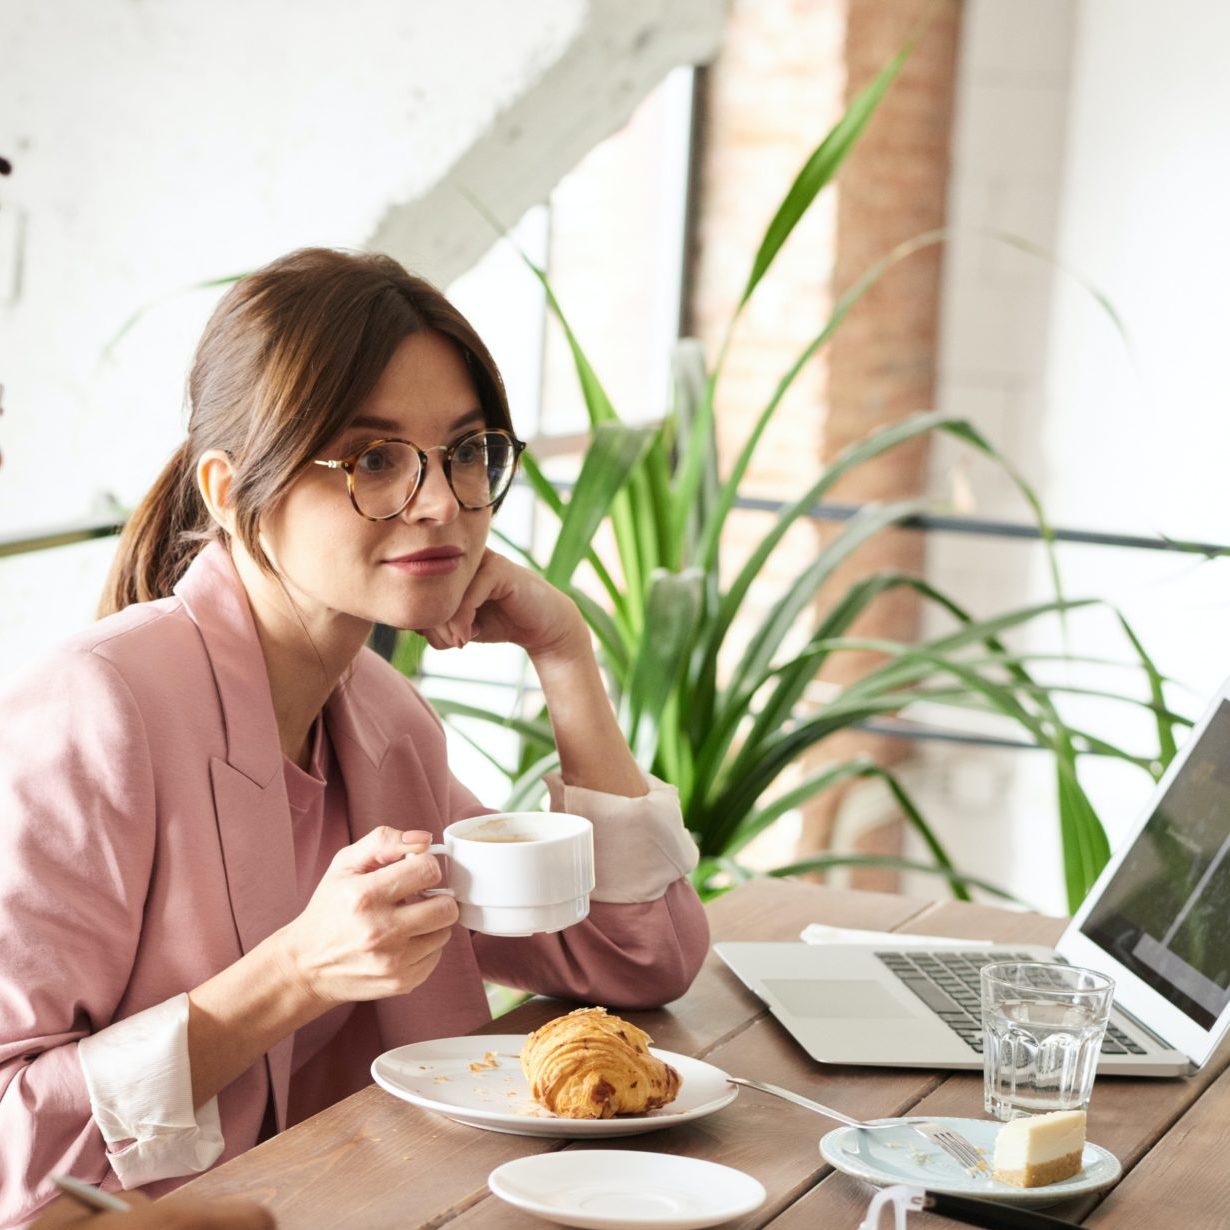 Bilan de compétence et congé parental sont compatible : cette image montre une jeune femme buvant un café et mangeant un croissant devant son ordinateur.